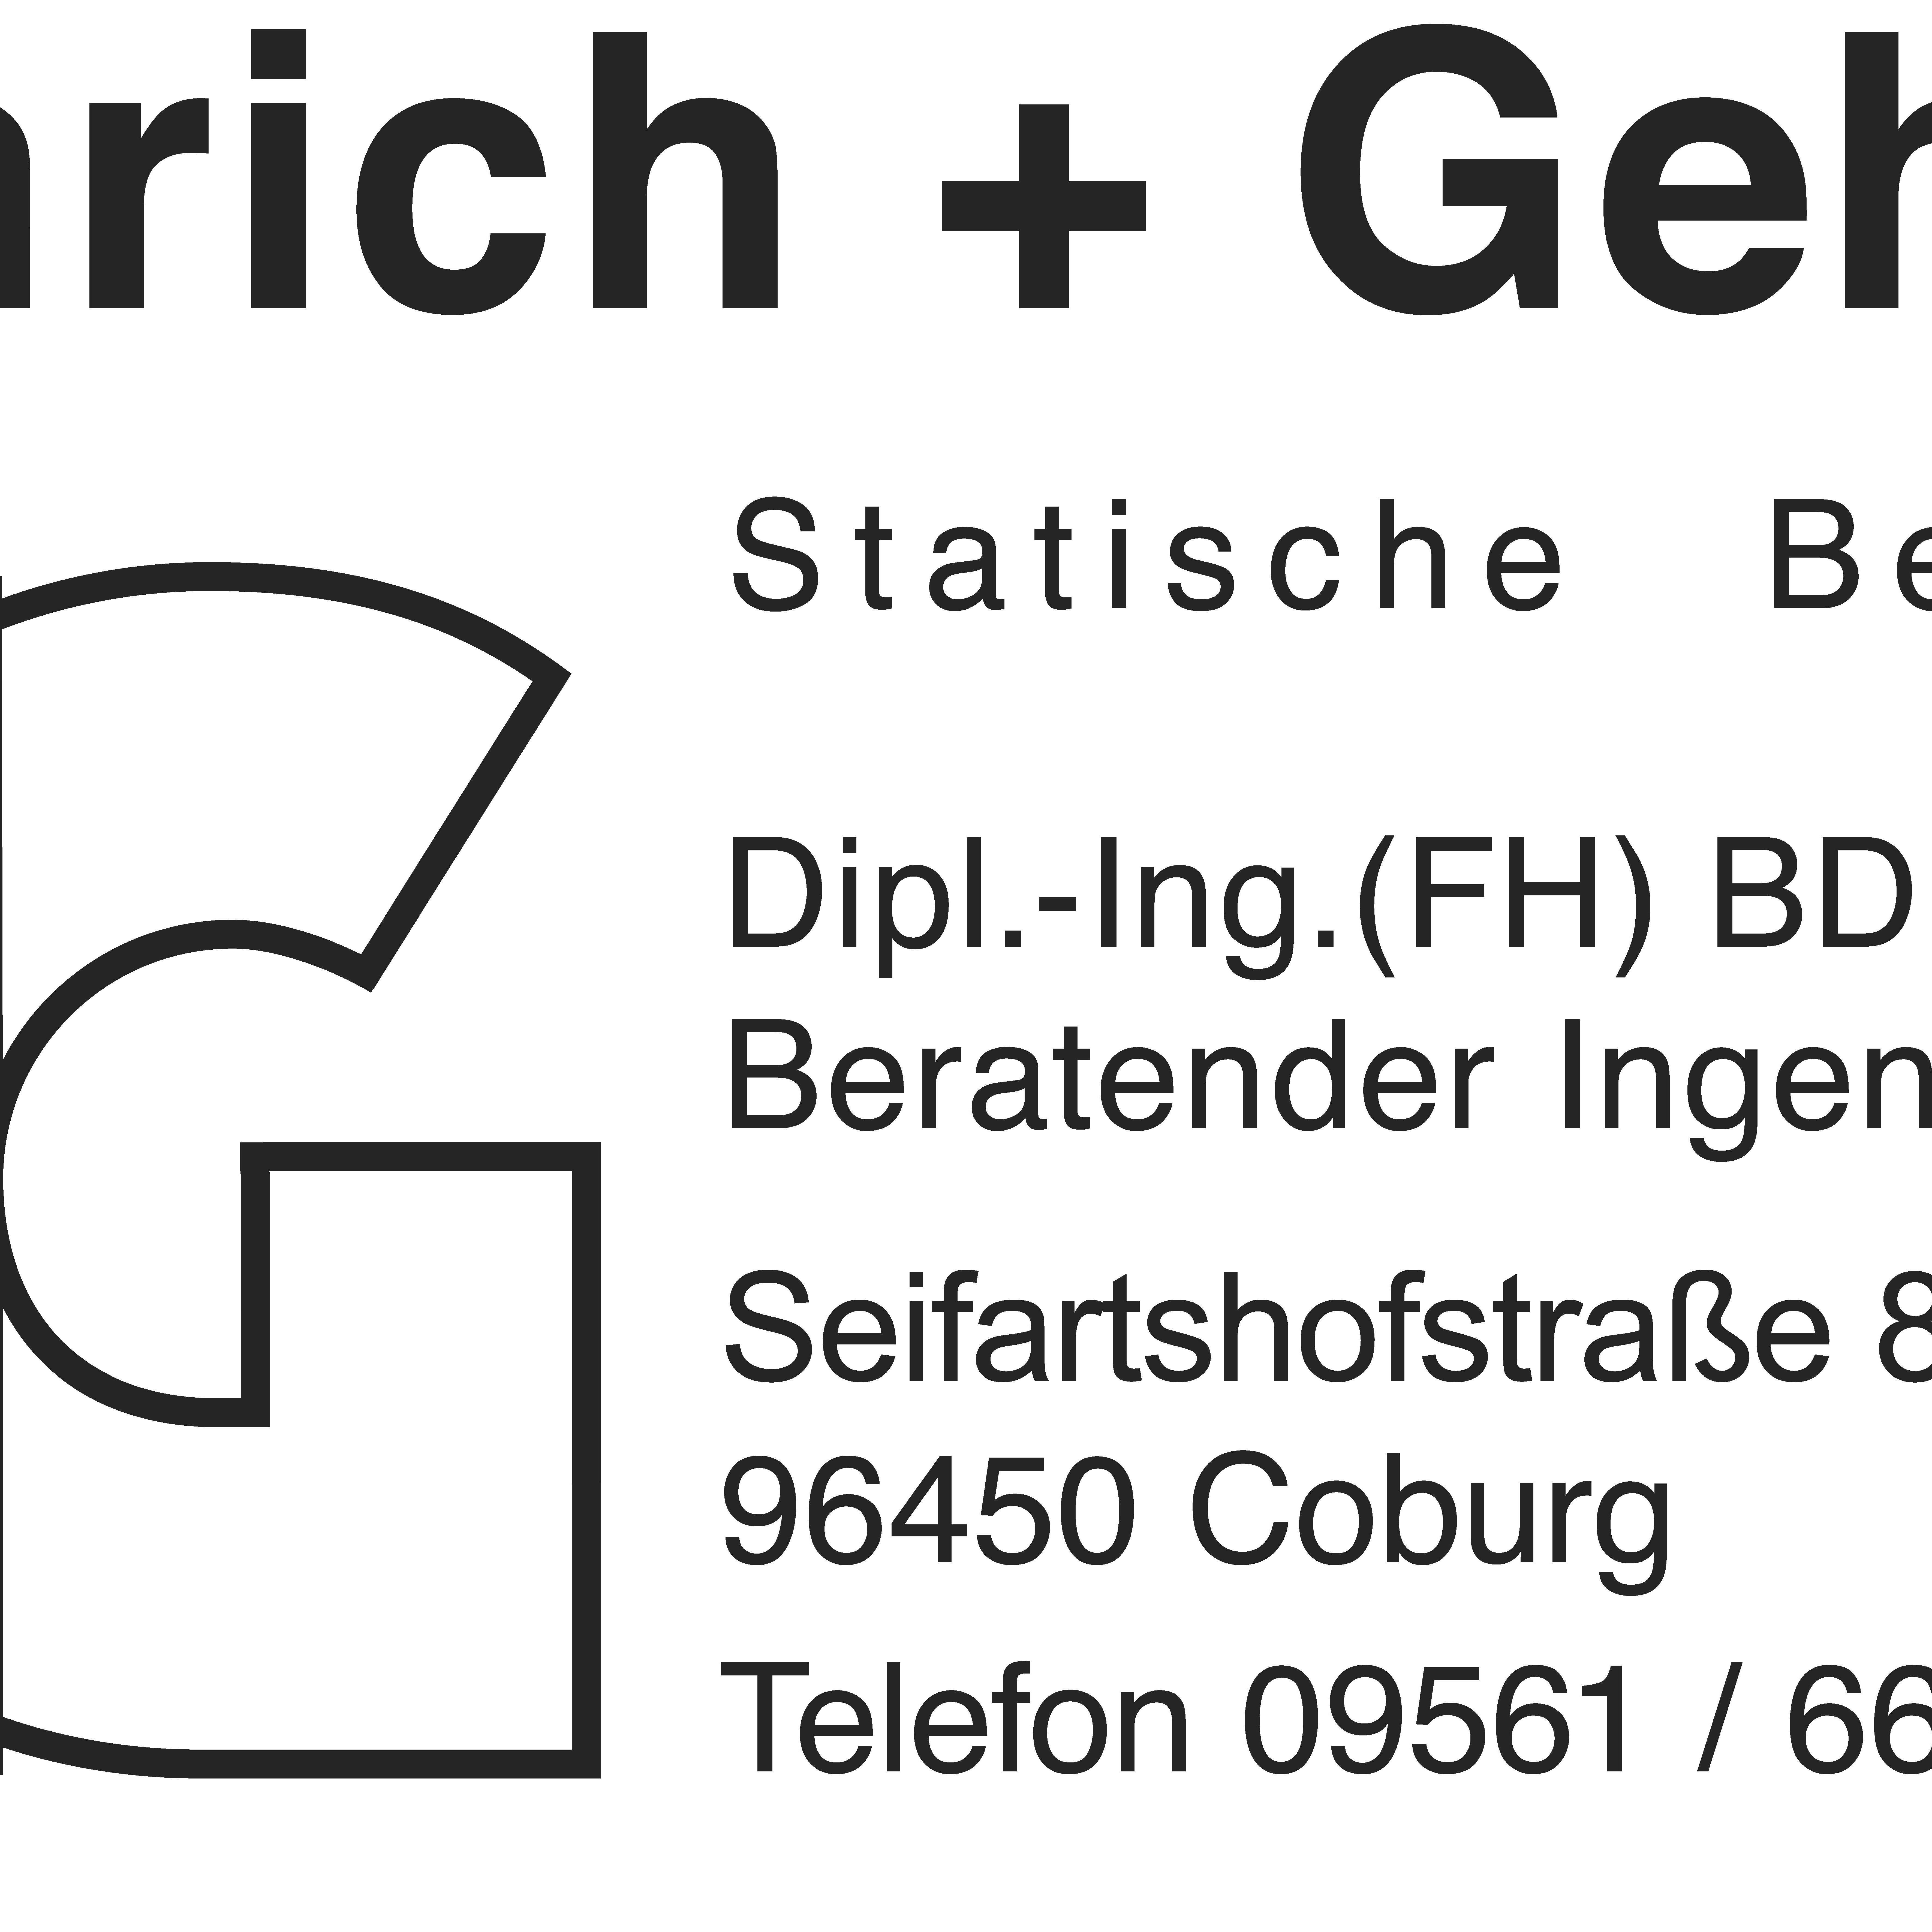 Heimrich + Gehring Ingenieurbüro Logo